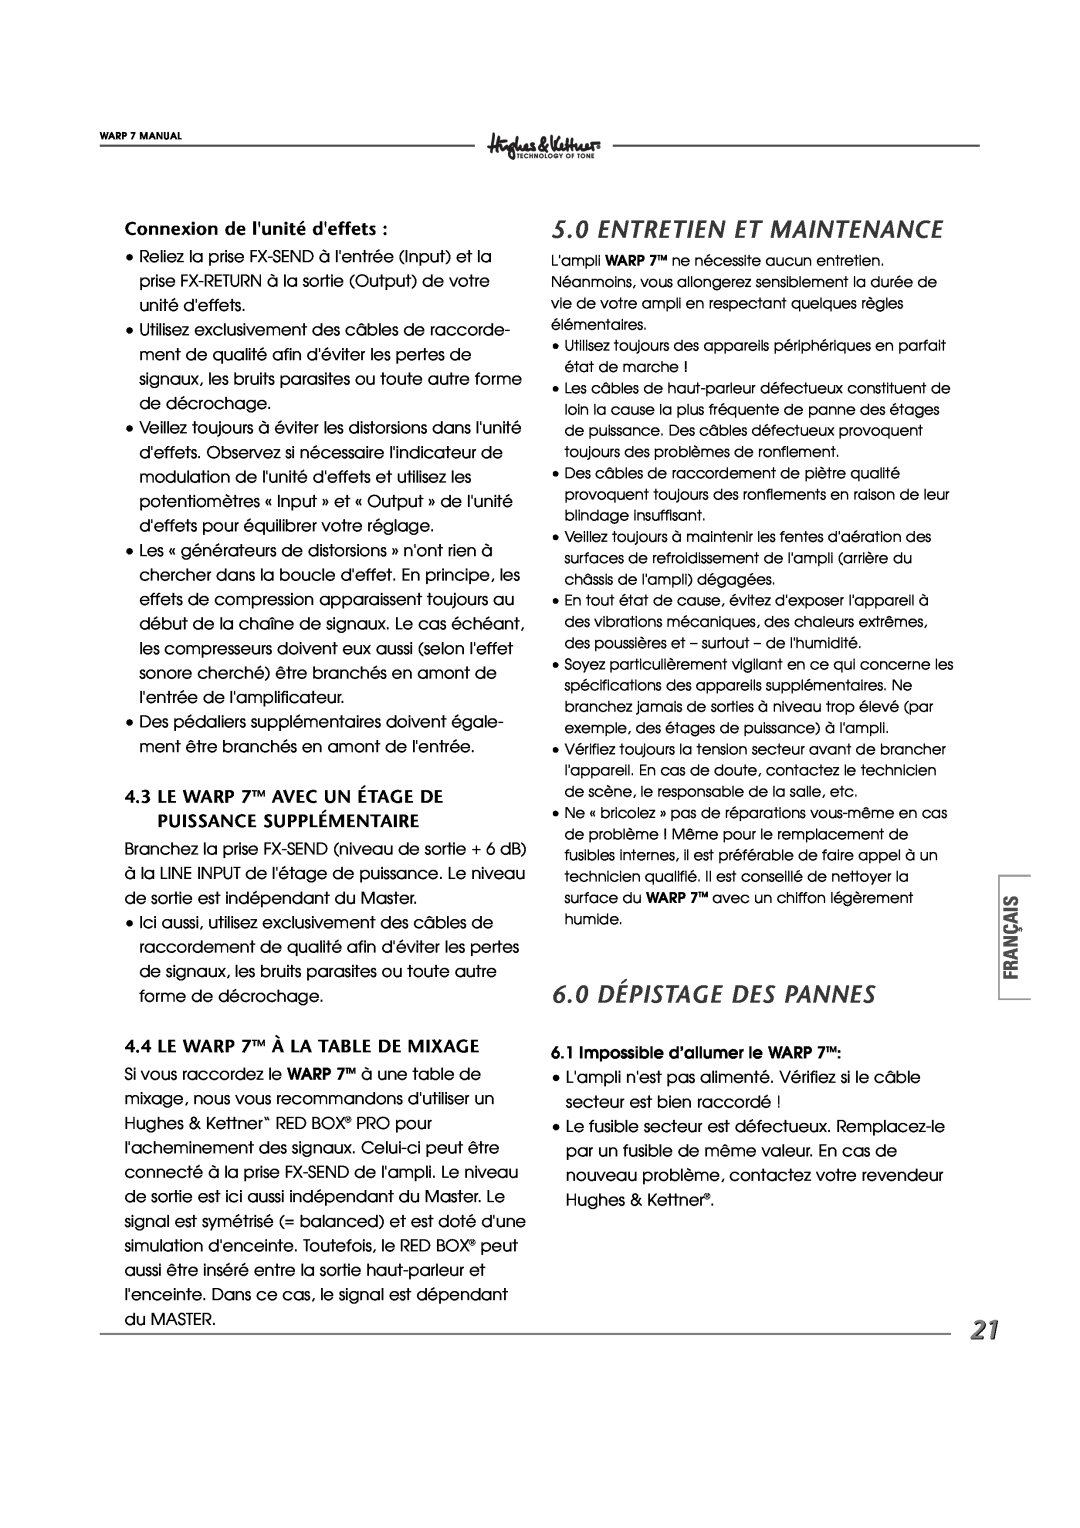 Hughes WARP7 manual Entretien Et Maintenance, 6.0 DÉPISTAGE DES PANNES, Connexion de lunité deffets 